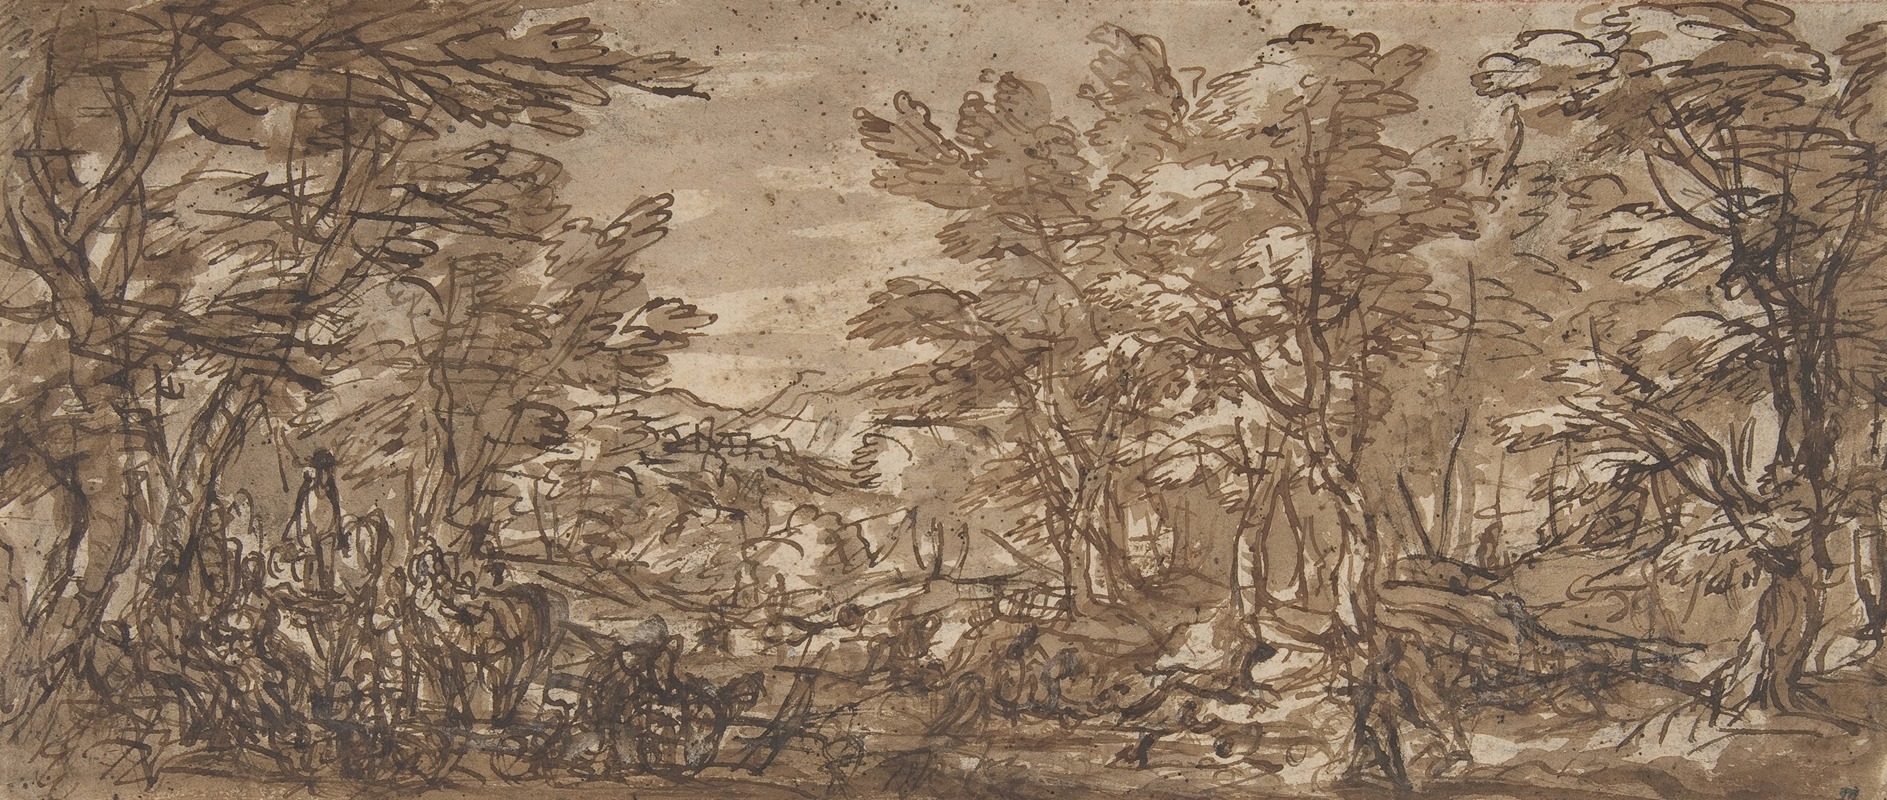 Pier Francesco Mola - Forest Scene, a Halt at the Left, a Hunt at the Center